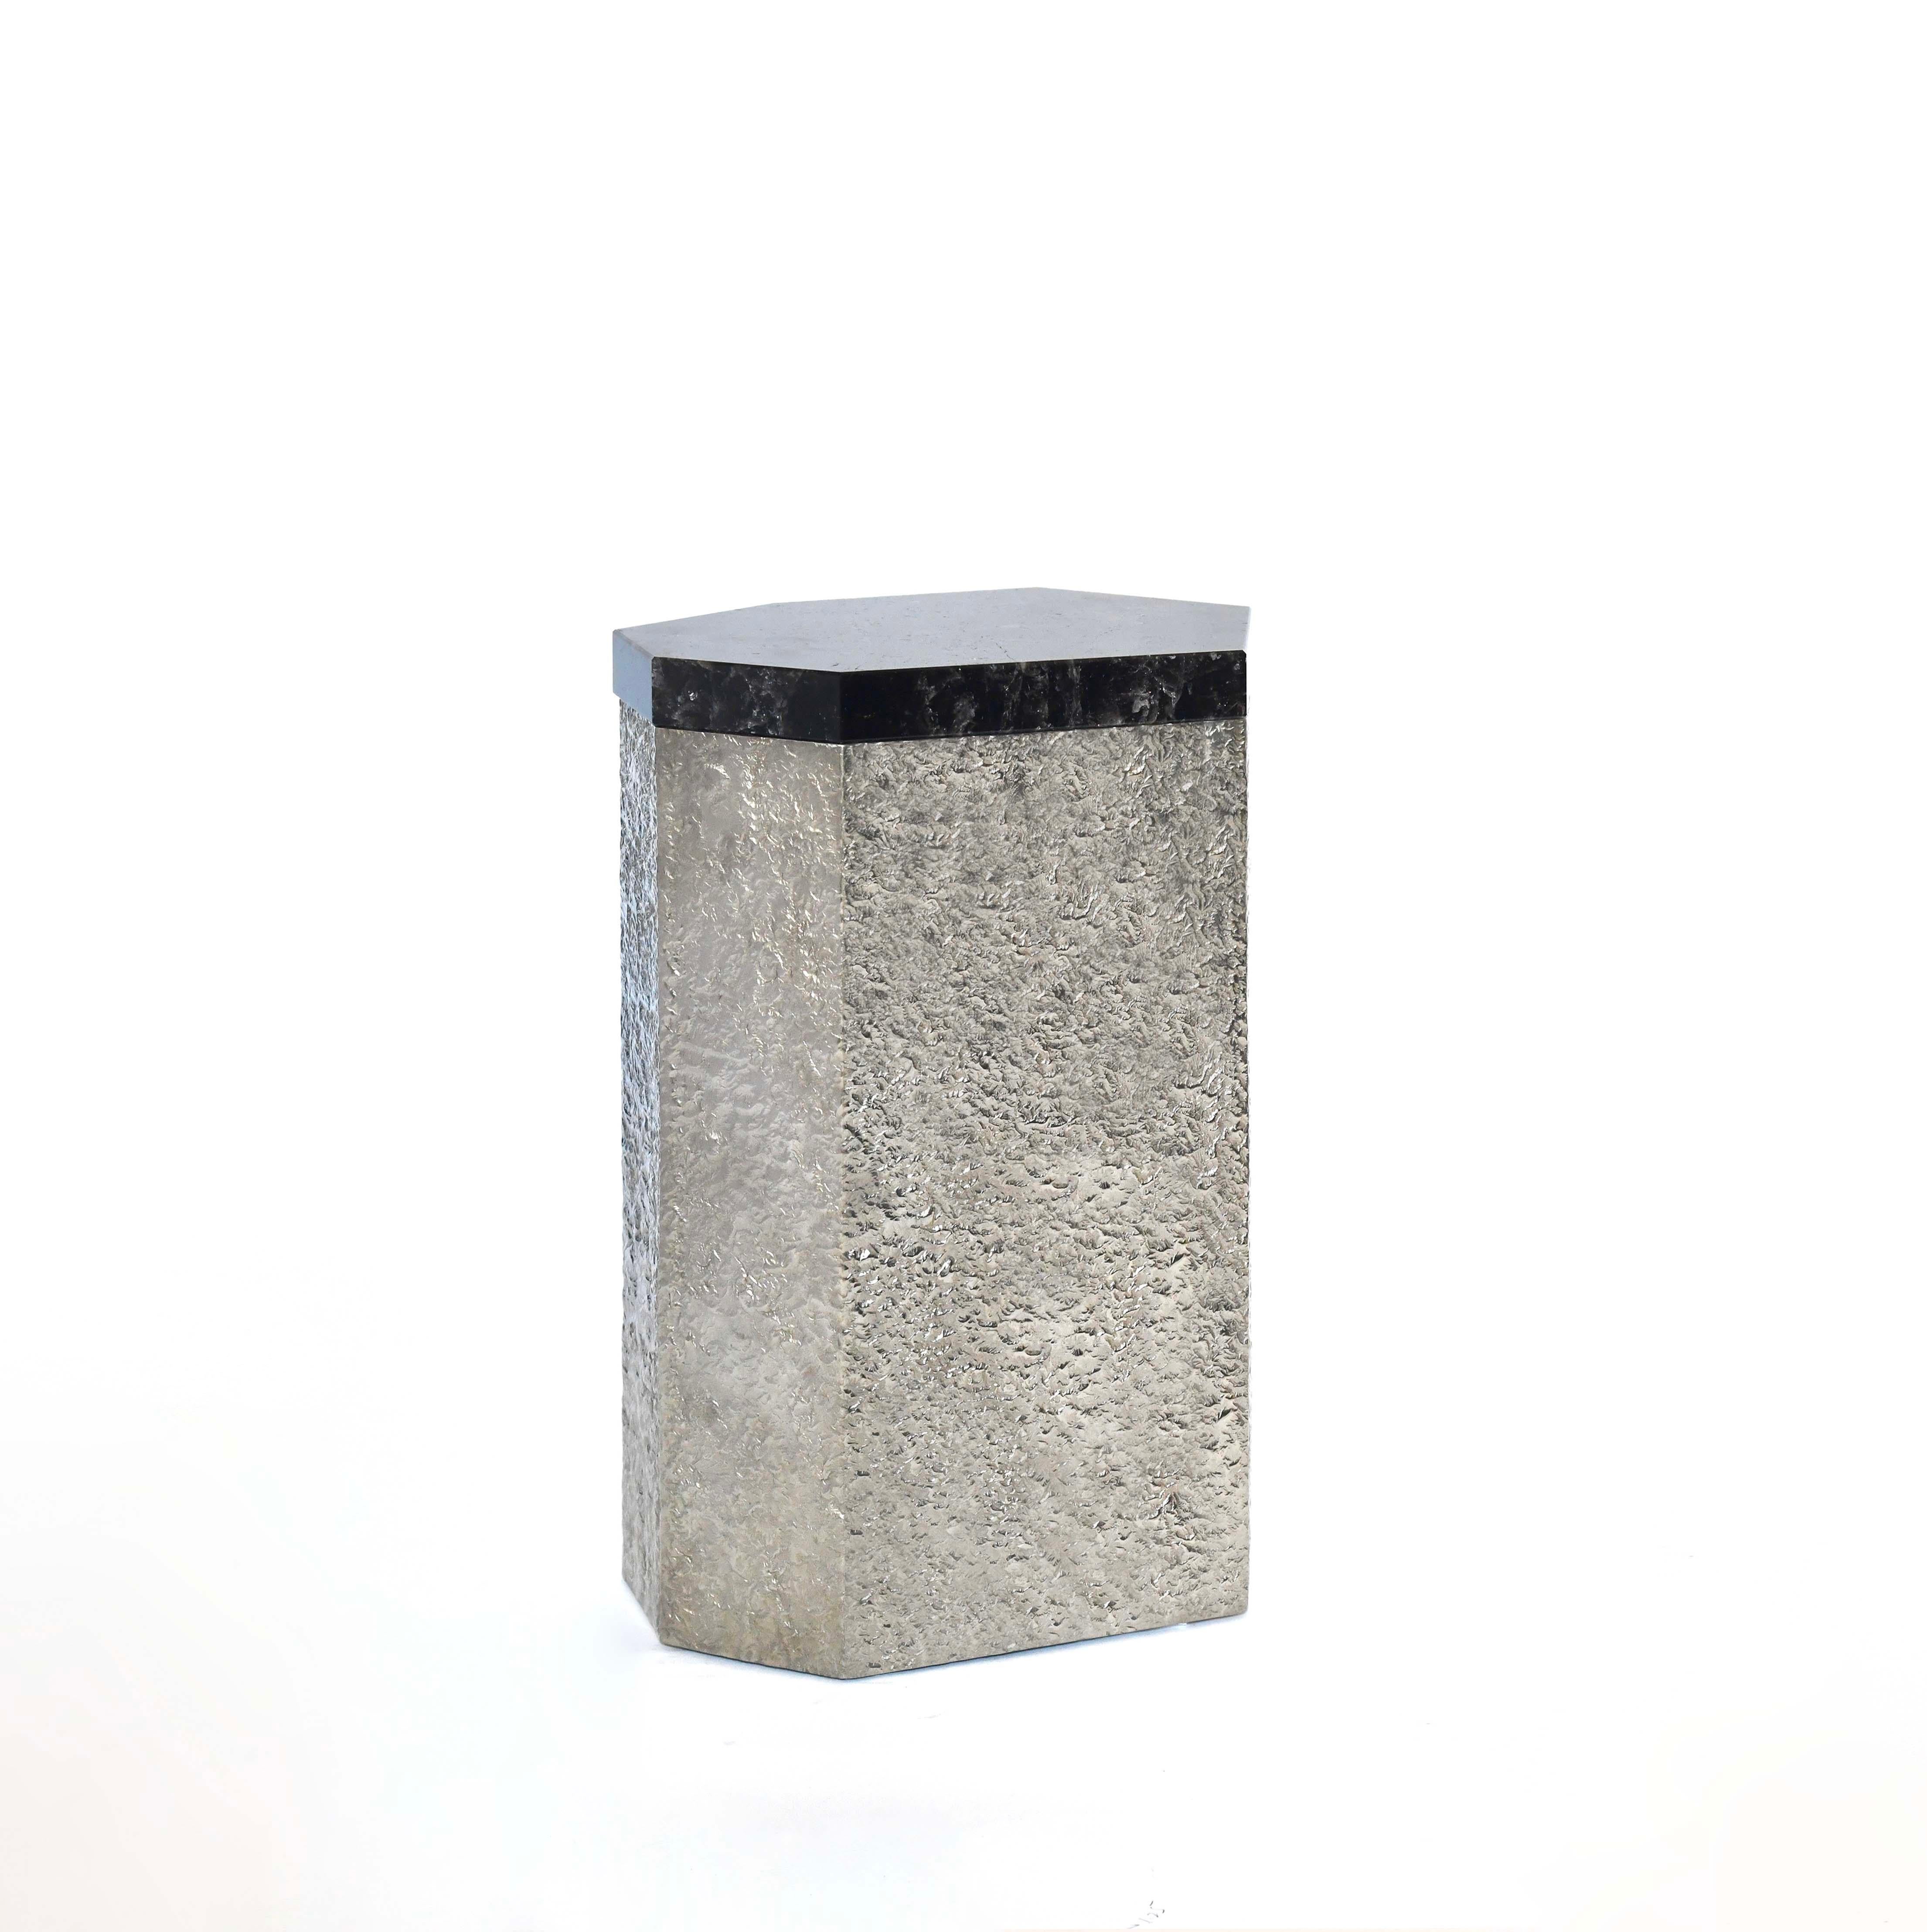 Beistelltisch aus Bergkristall in eleganter Form, entworfen von Phoenix Gallery, NYC. Sockel aus gehämmertem Nickel mit dunklem rauchfarbenem Bergkristall.
Kundenspezifische Größe, Menge und Ausführung auf Anfrage.